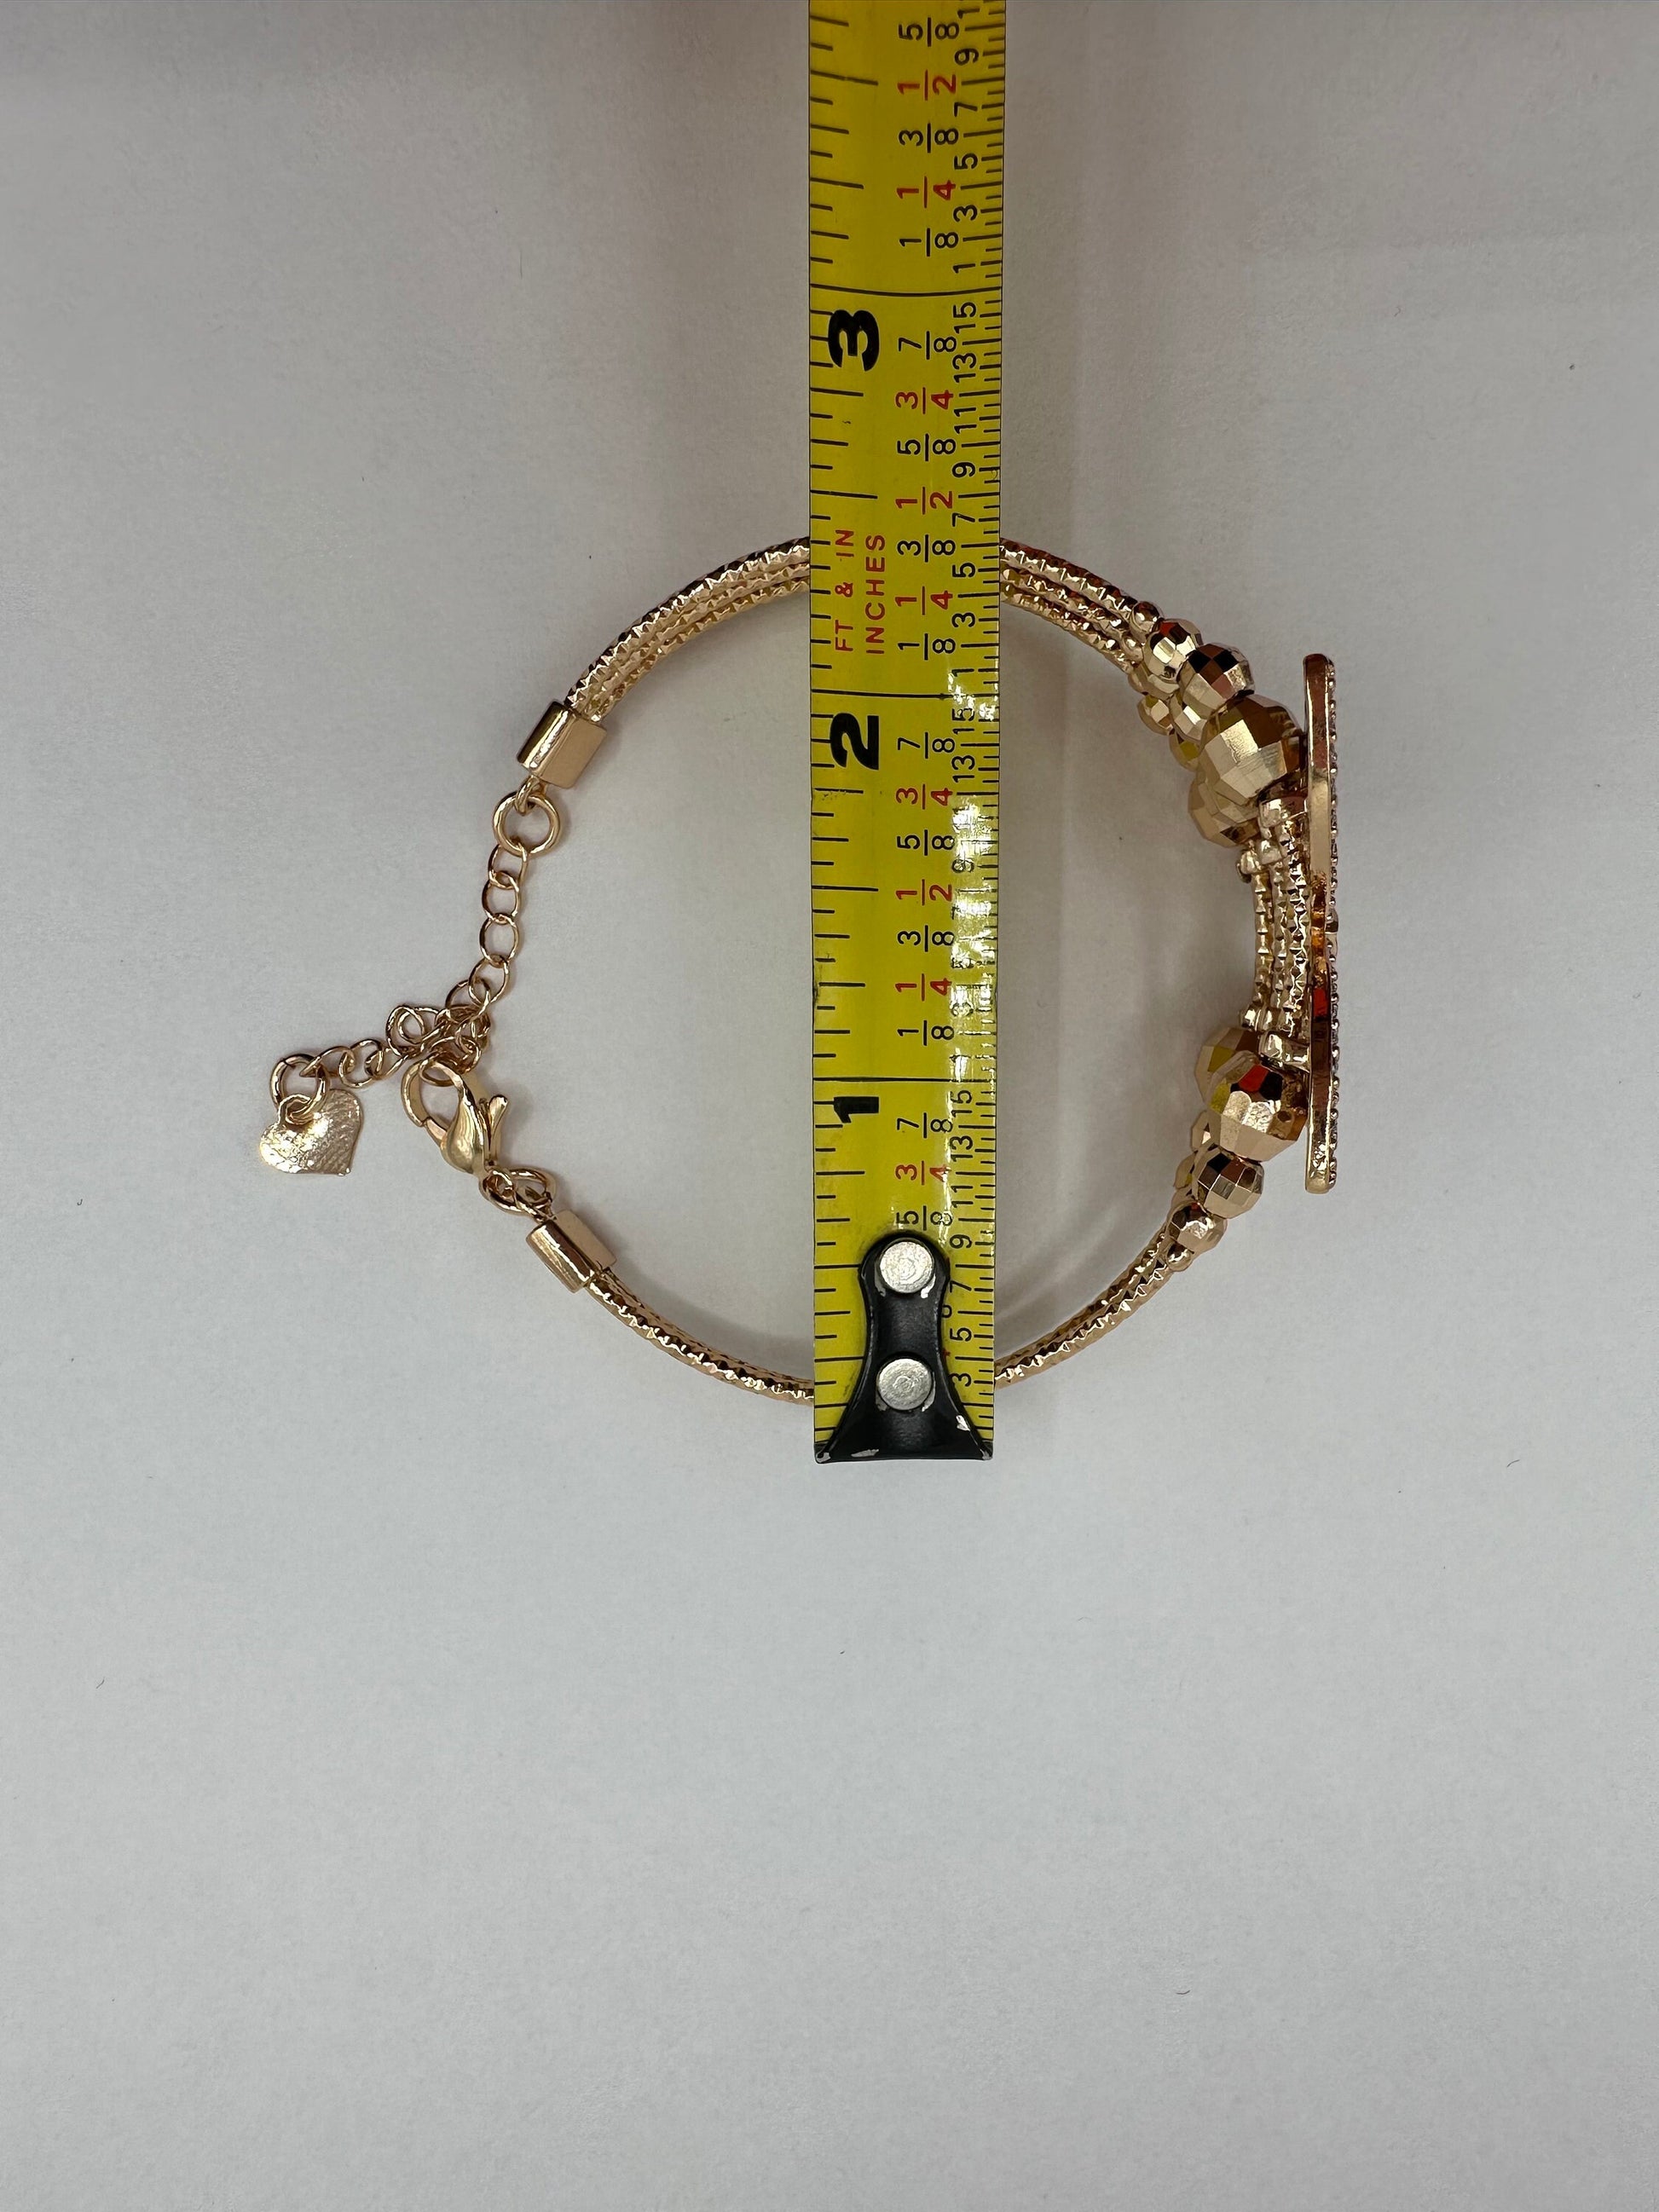 Vintage Butterfly Bangle Bracelet 9k Gold filled Crystal